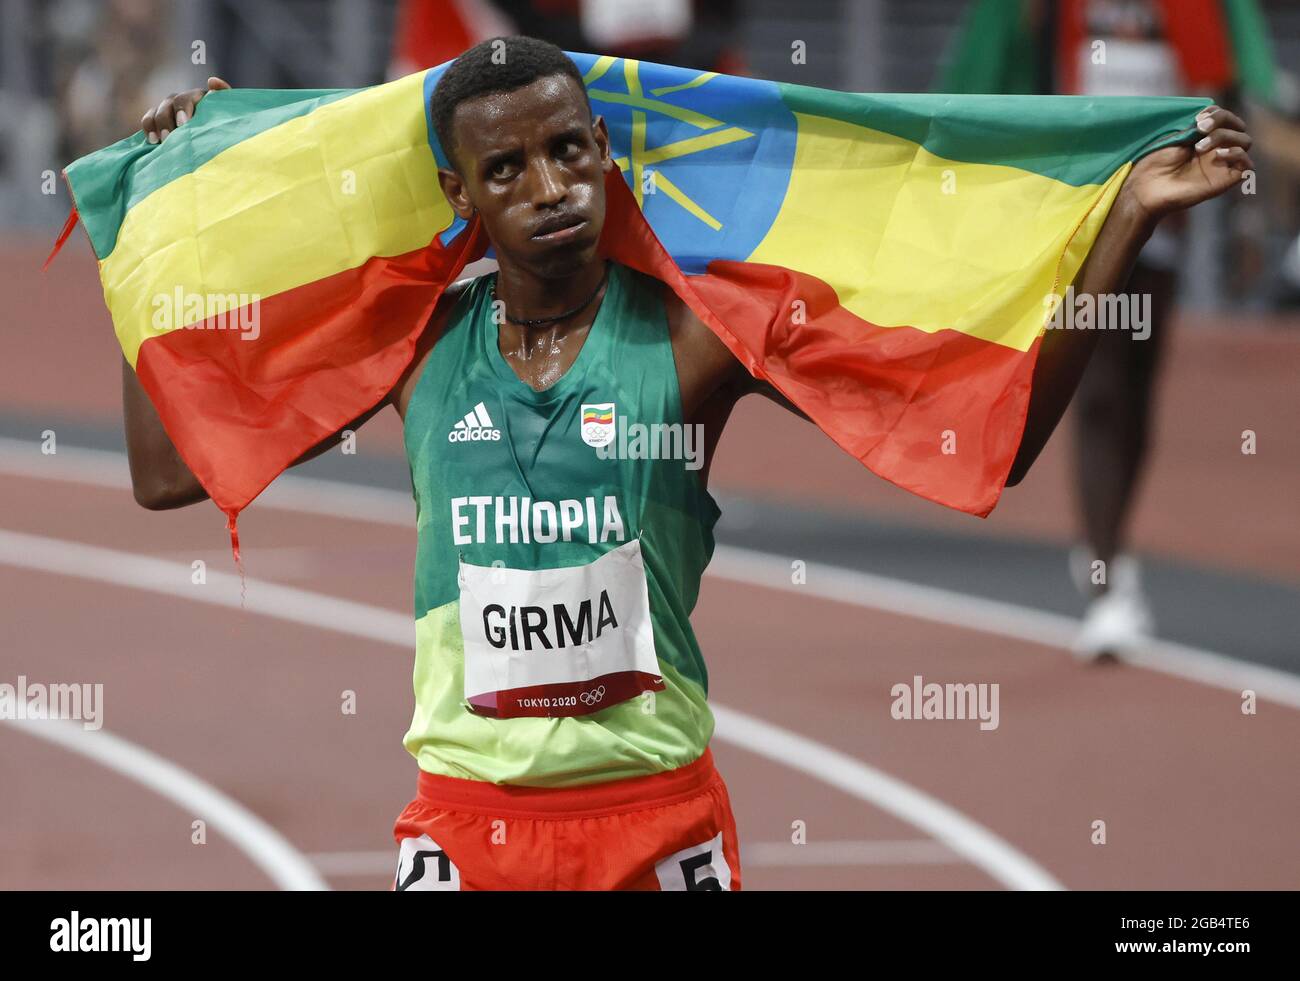 Der Äthiopier Lamecha Girma feiert am Montag, den 2. August 2021, beim Steeplechase-Finale der Männer über 3000 m im Olympiastadion im Rahmen der Olympischen Sommerspiele 2020 in Tokio, Japan, seinen Silbermedaillenrang mit einer Zeit von 8:10.38. Foto von Tasos Katopodis/UPI Stockfoto